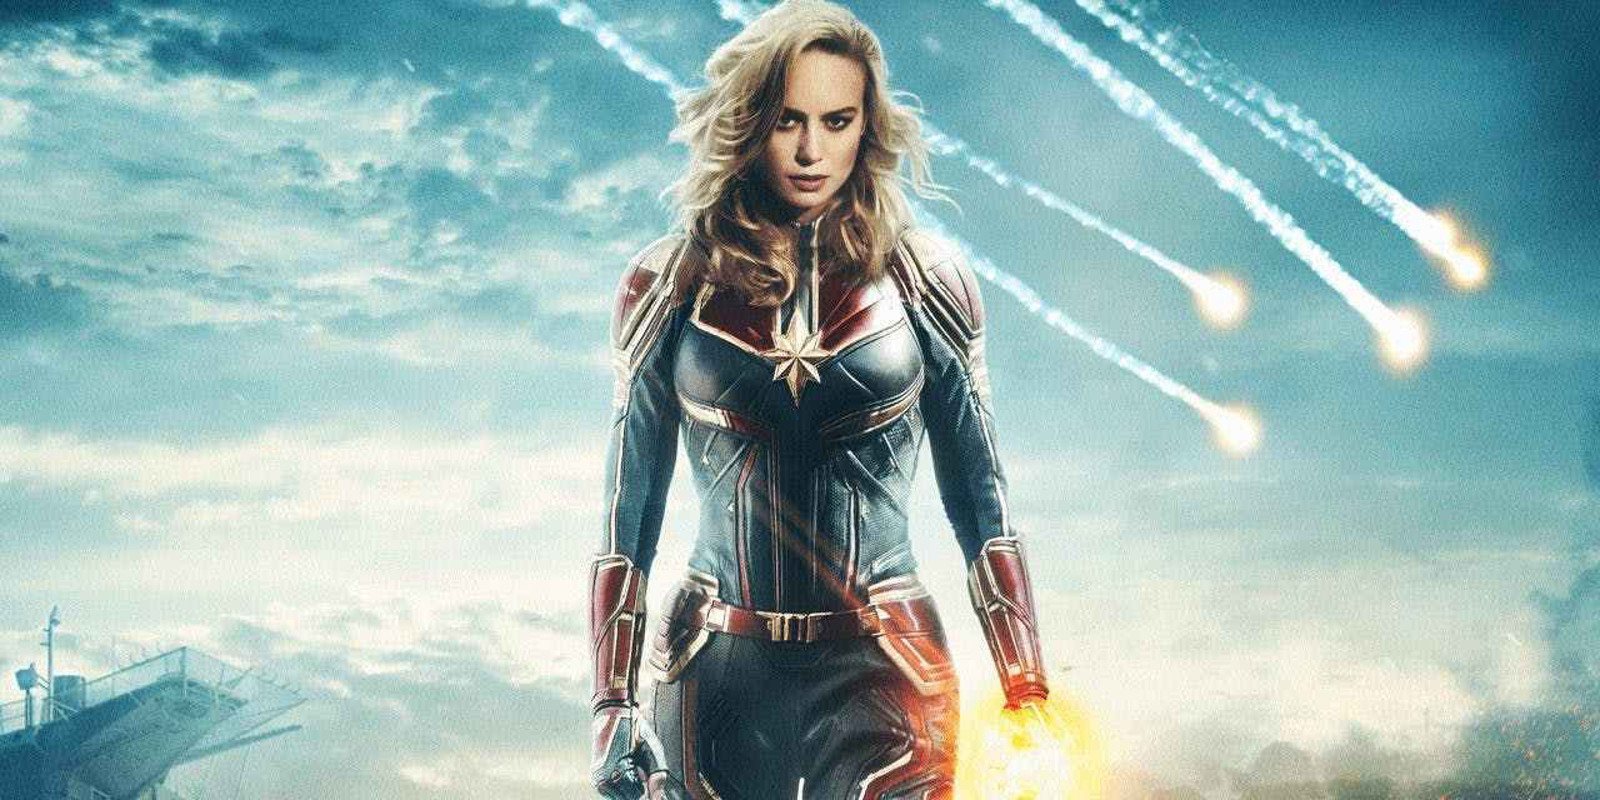 Las próximas películas de Marvel serán dirigidas por mujeres, según Kevin Feige